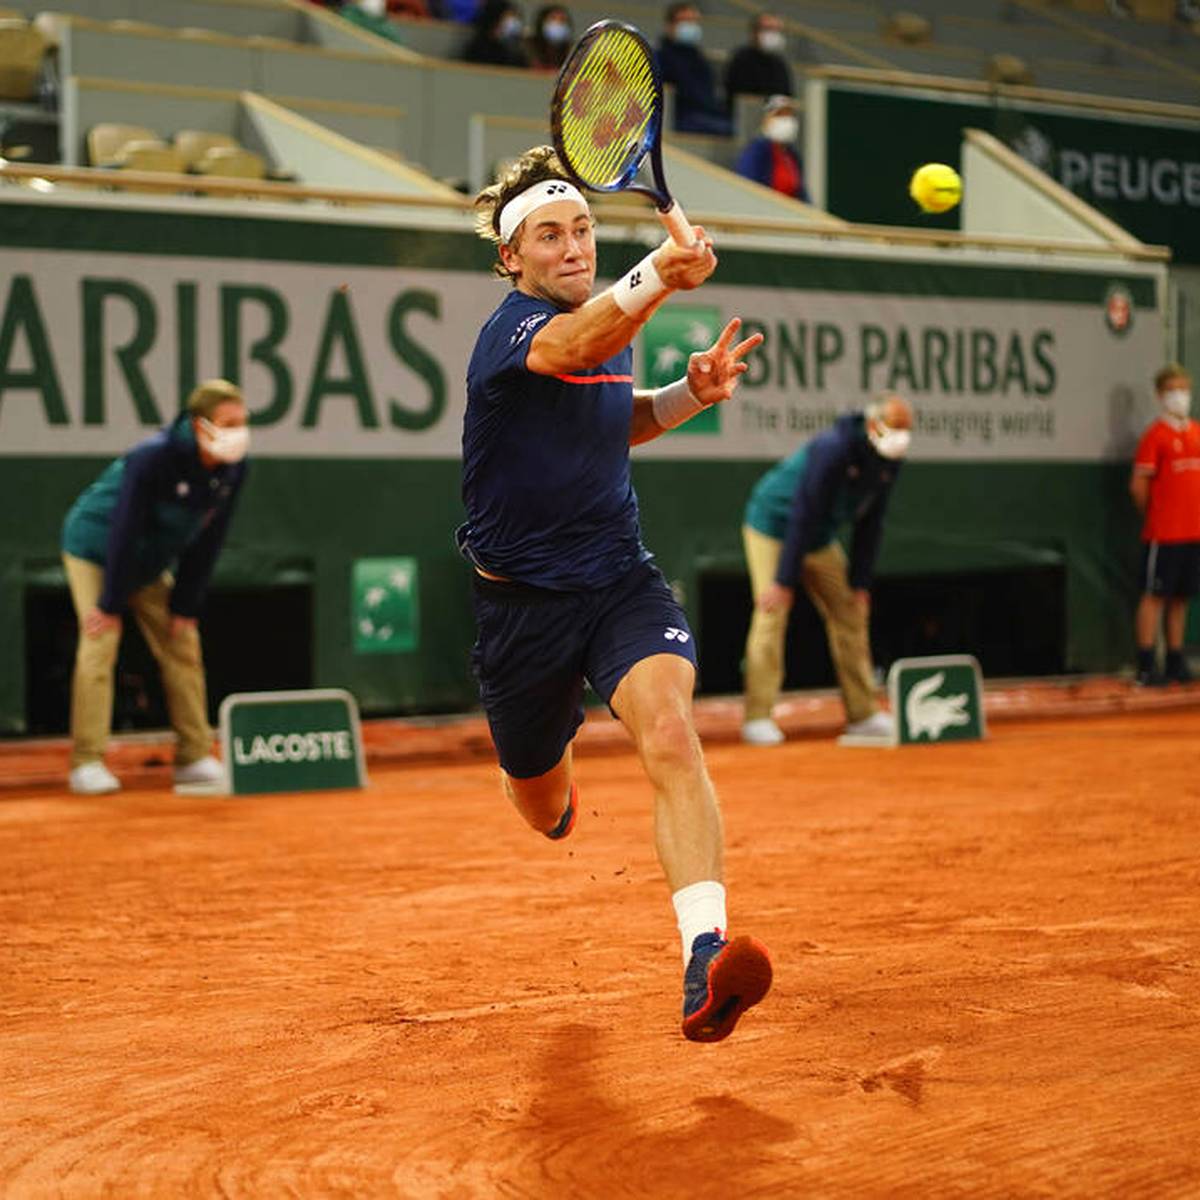 ATP Tennis-Aufsteiger Casper Ruud mit Ansage an Nadal, Federer und Co.